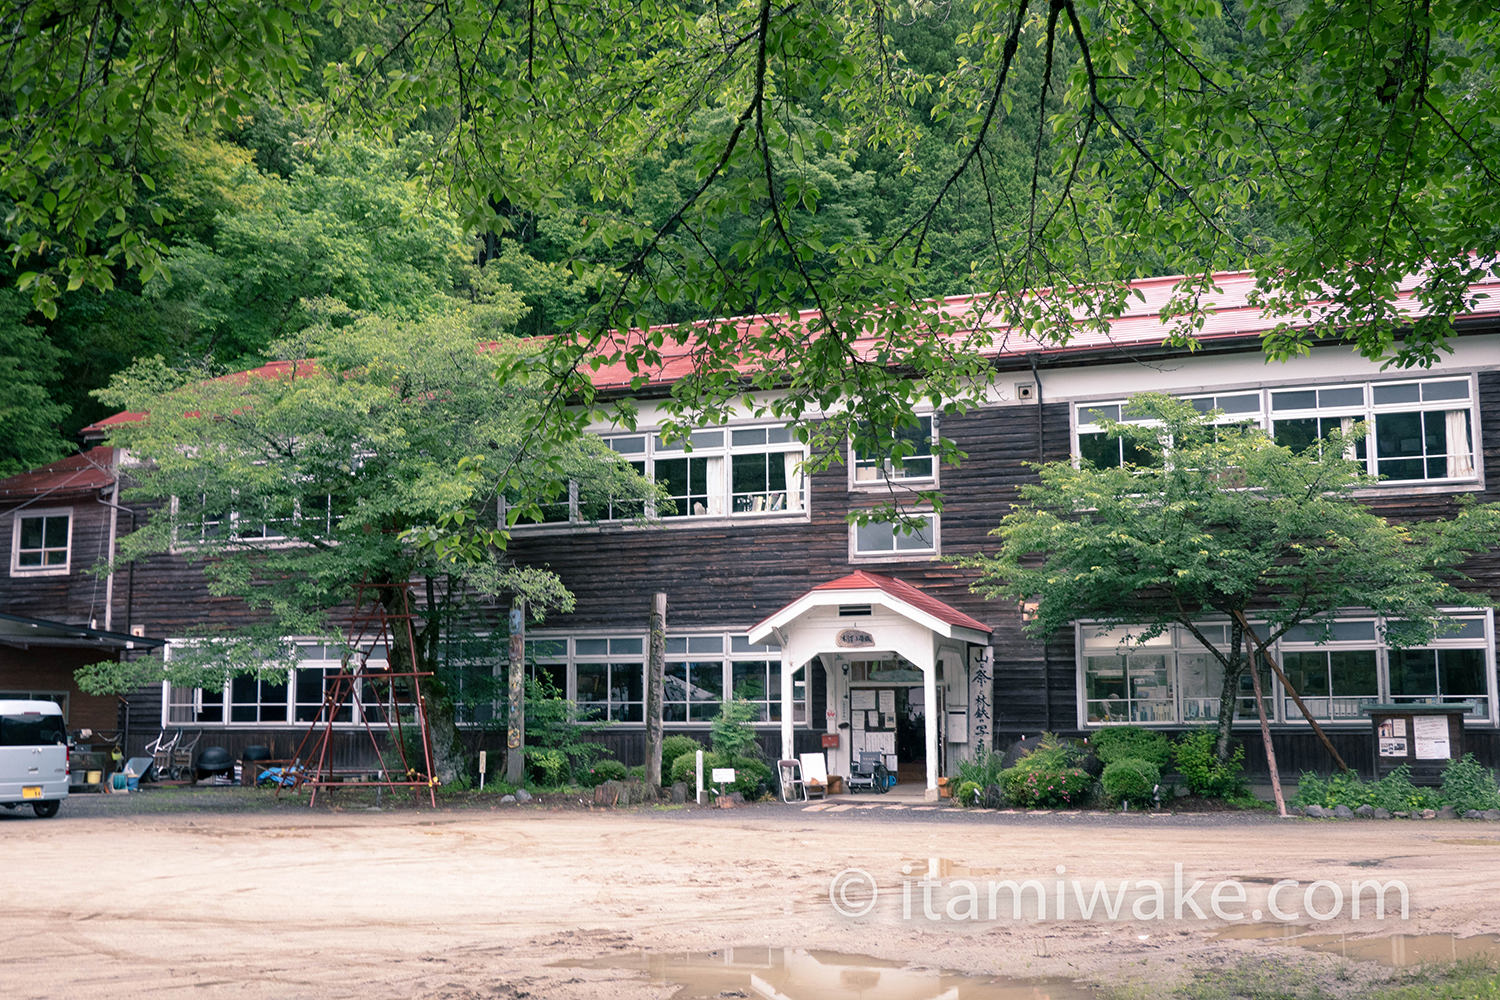 長野県、木沢小学校へ。誰でも見学可能な木造廃校で素敵な写真を撮る。レトロな雰囲気を無料で楽しめます